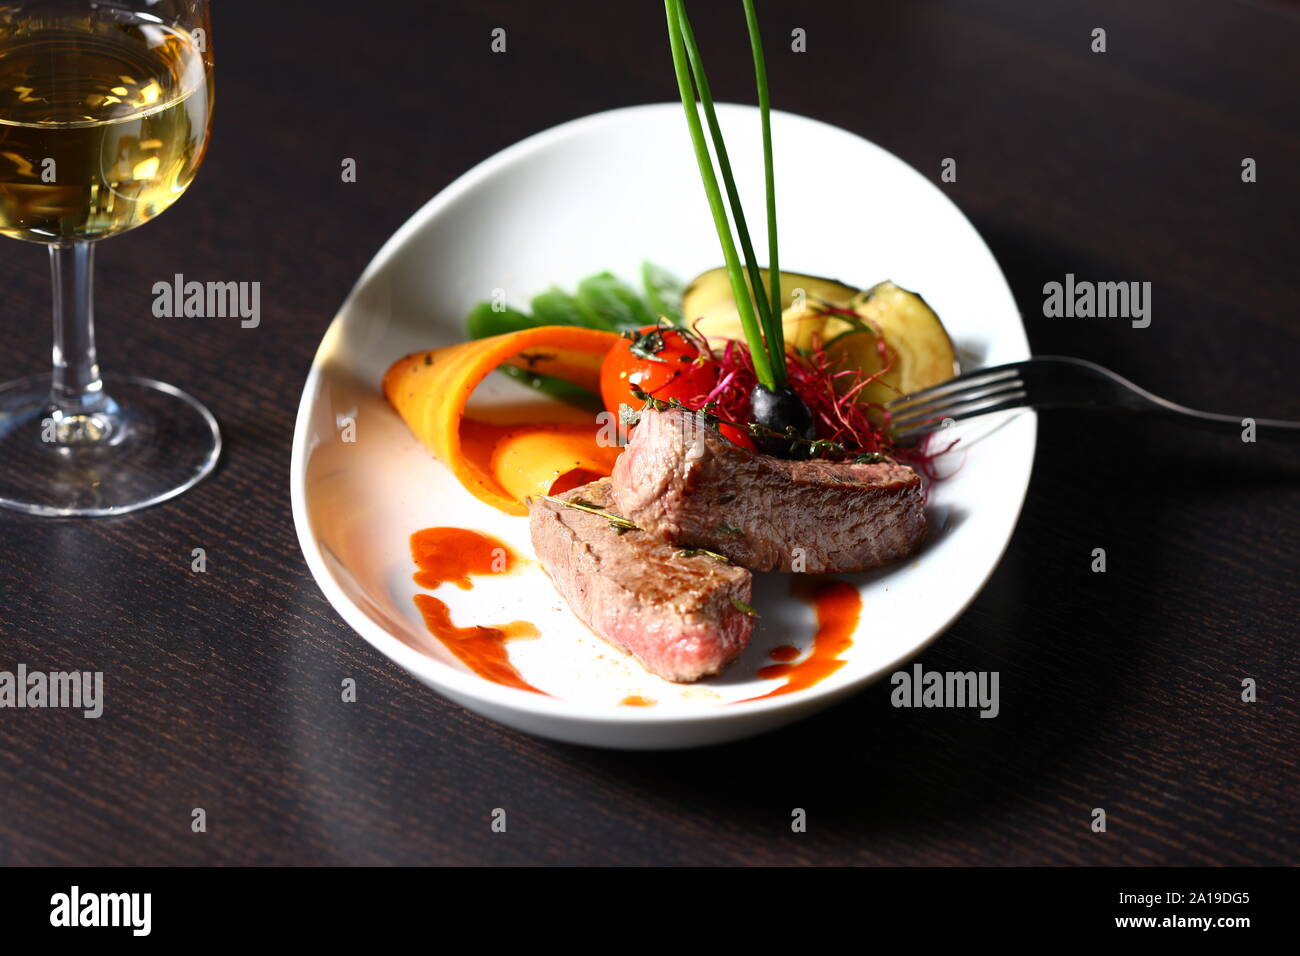 Gute tast Food - Steak zum Abendessen mit einem guten Glas Wein. Stockfoto